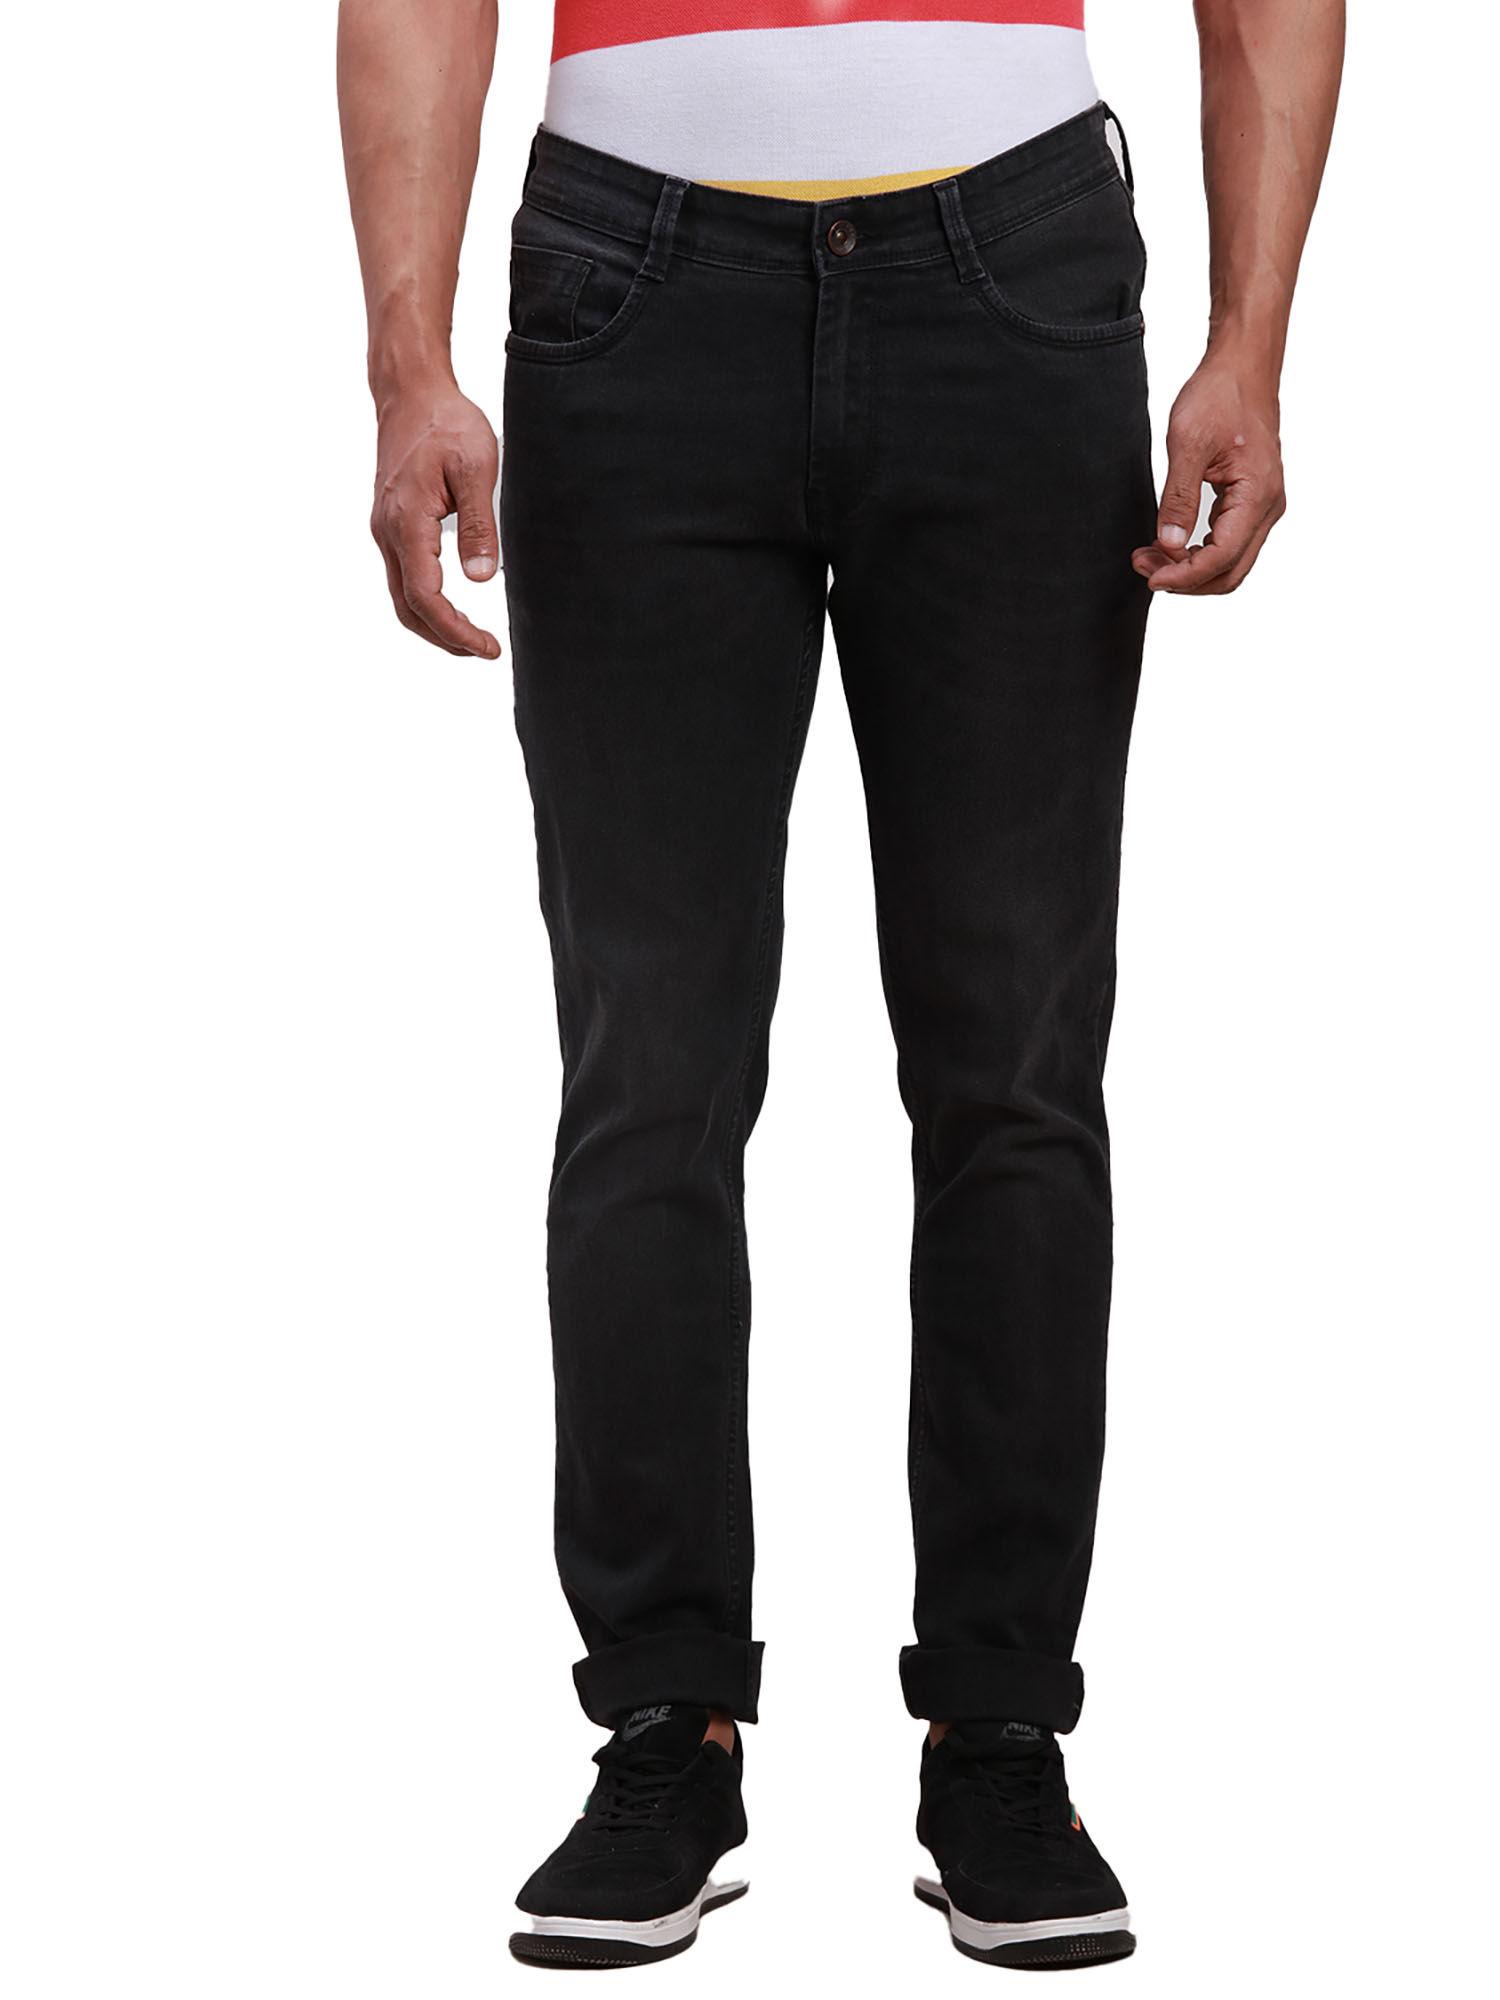 super slim fit solid black jeans